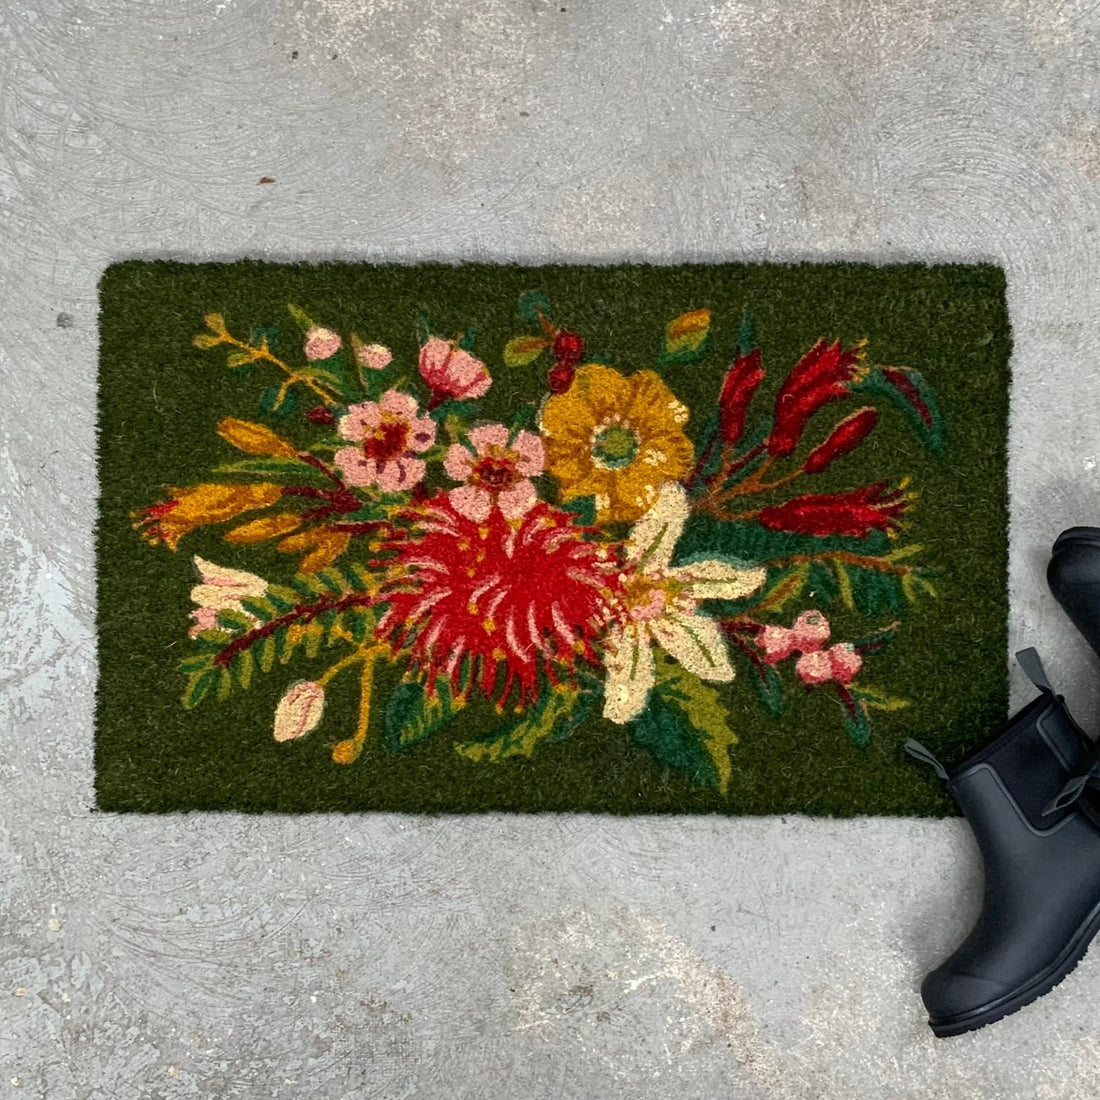 Printed Coir Doormat - Putiputi - The Flower Crate